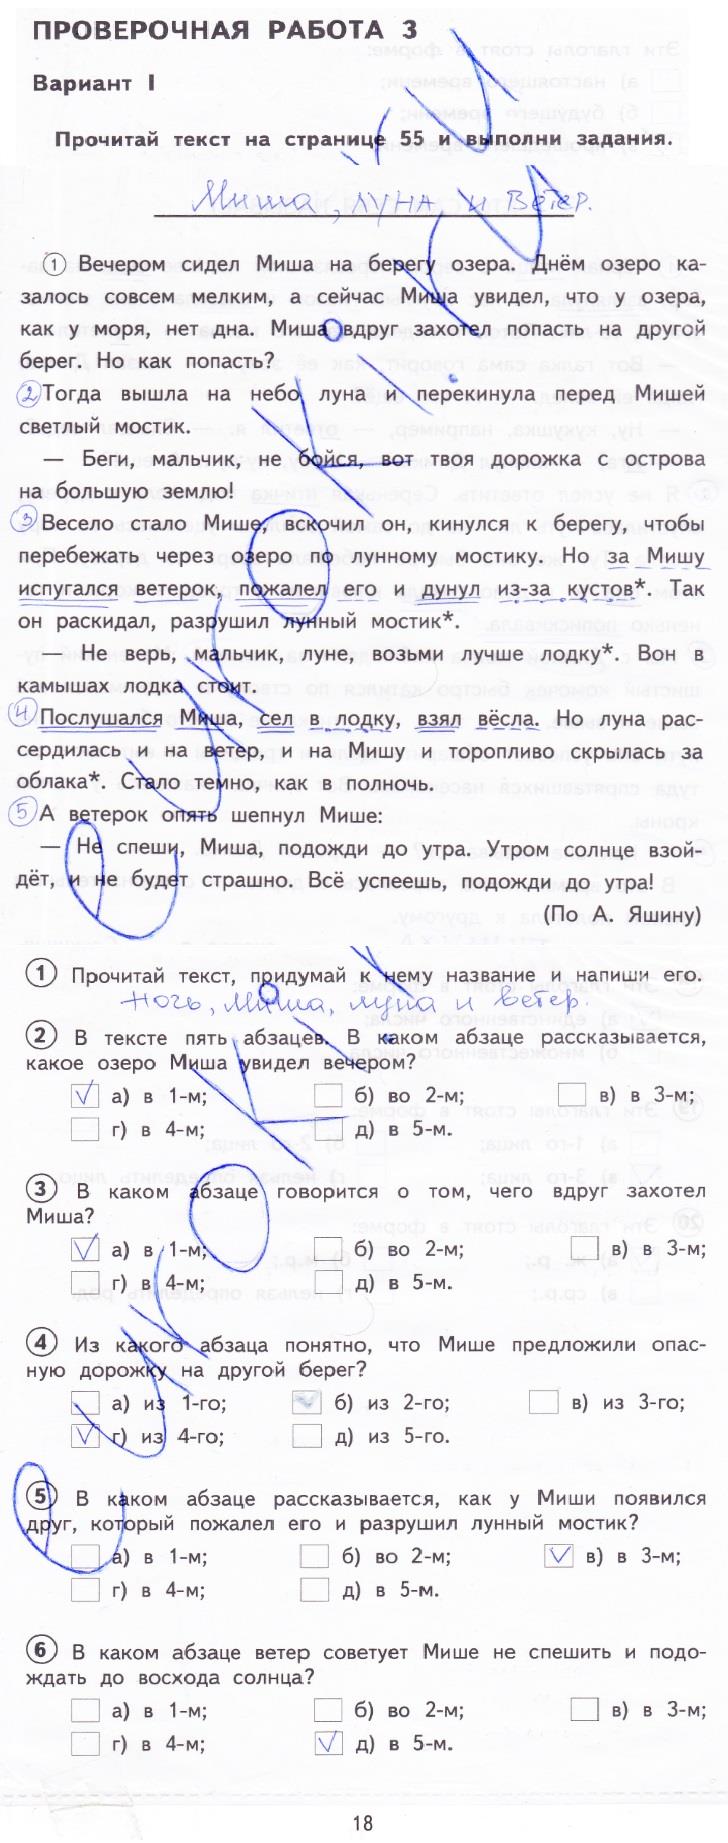 гдз 4 класс тетрадь для проверочных работ страница 14 русский язык Лаврова